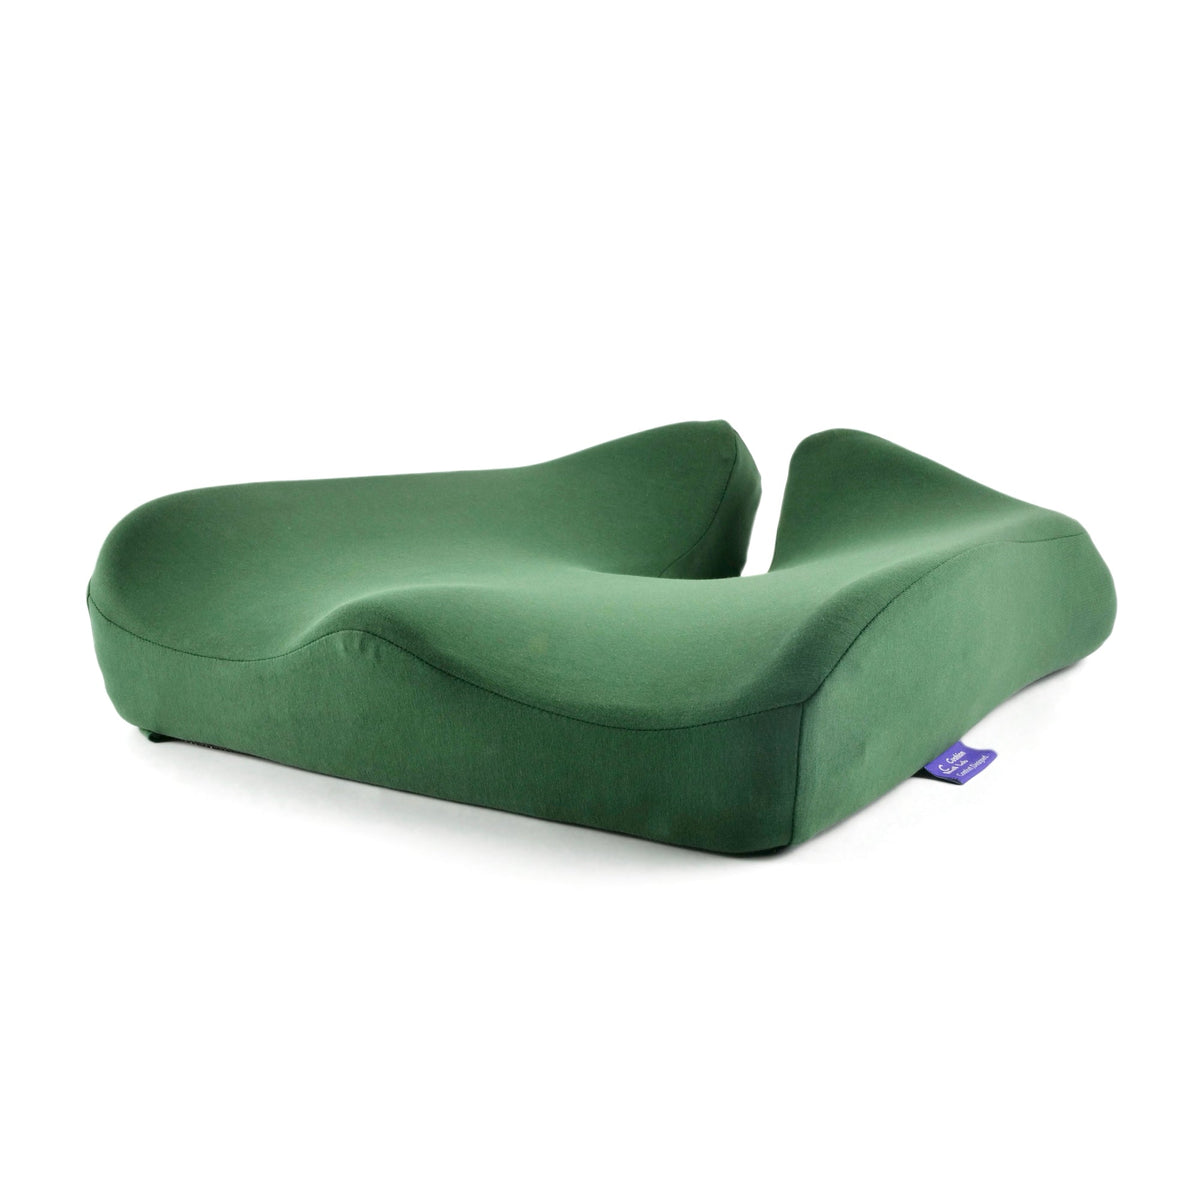 Cushion Lab Pressure Relief Seat Cushion - Green